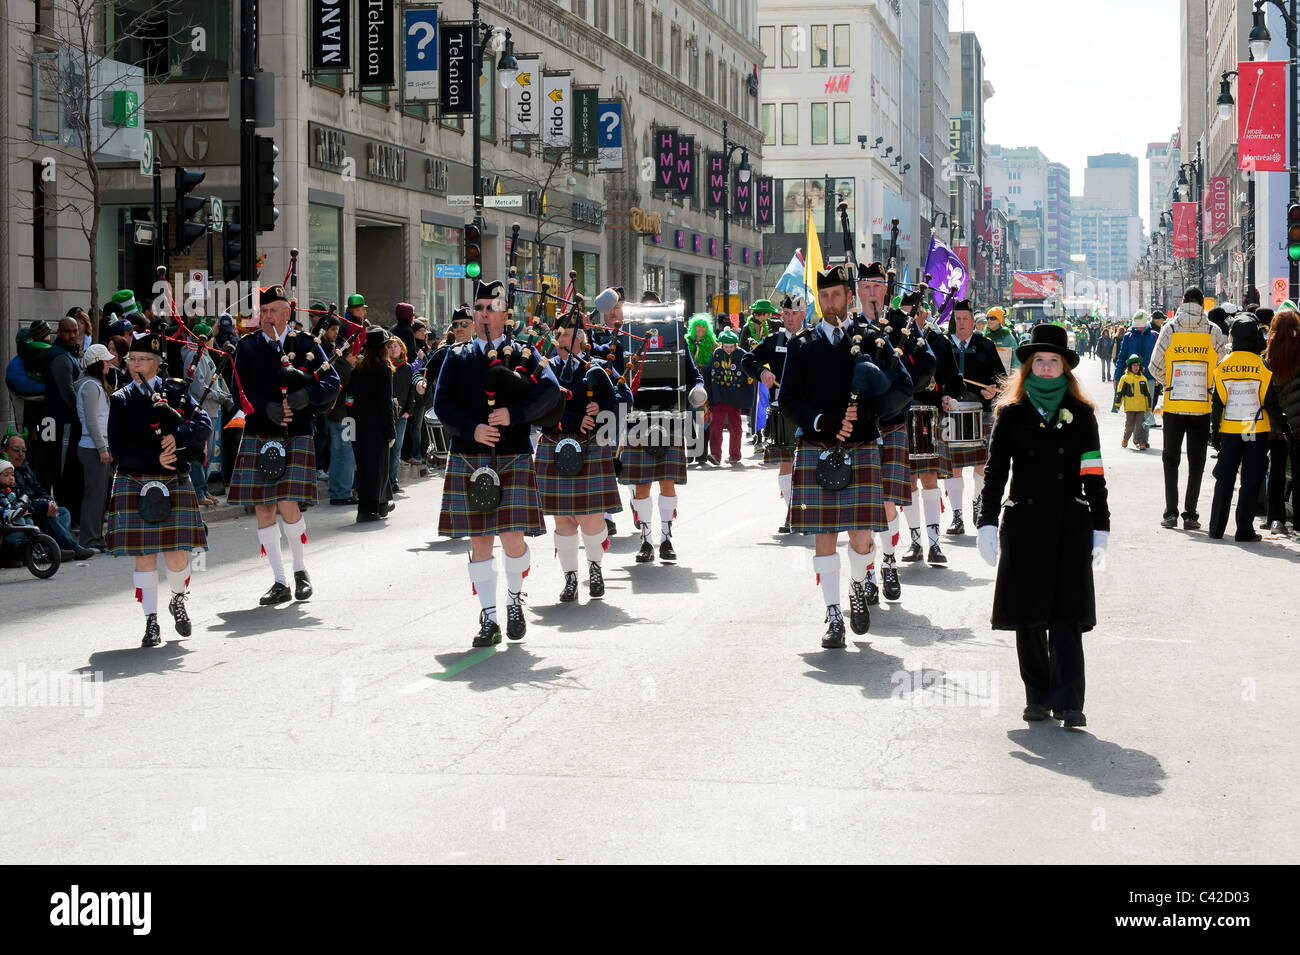 Les cornemuses défilent sur la rue Sainte-Catherine à Montréal pendant la parade de la St Patrick. Banque D'Images